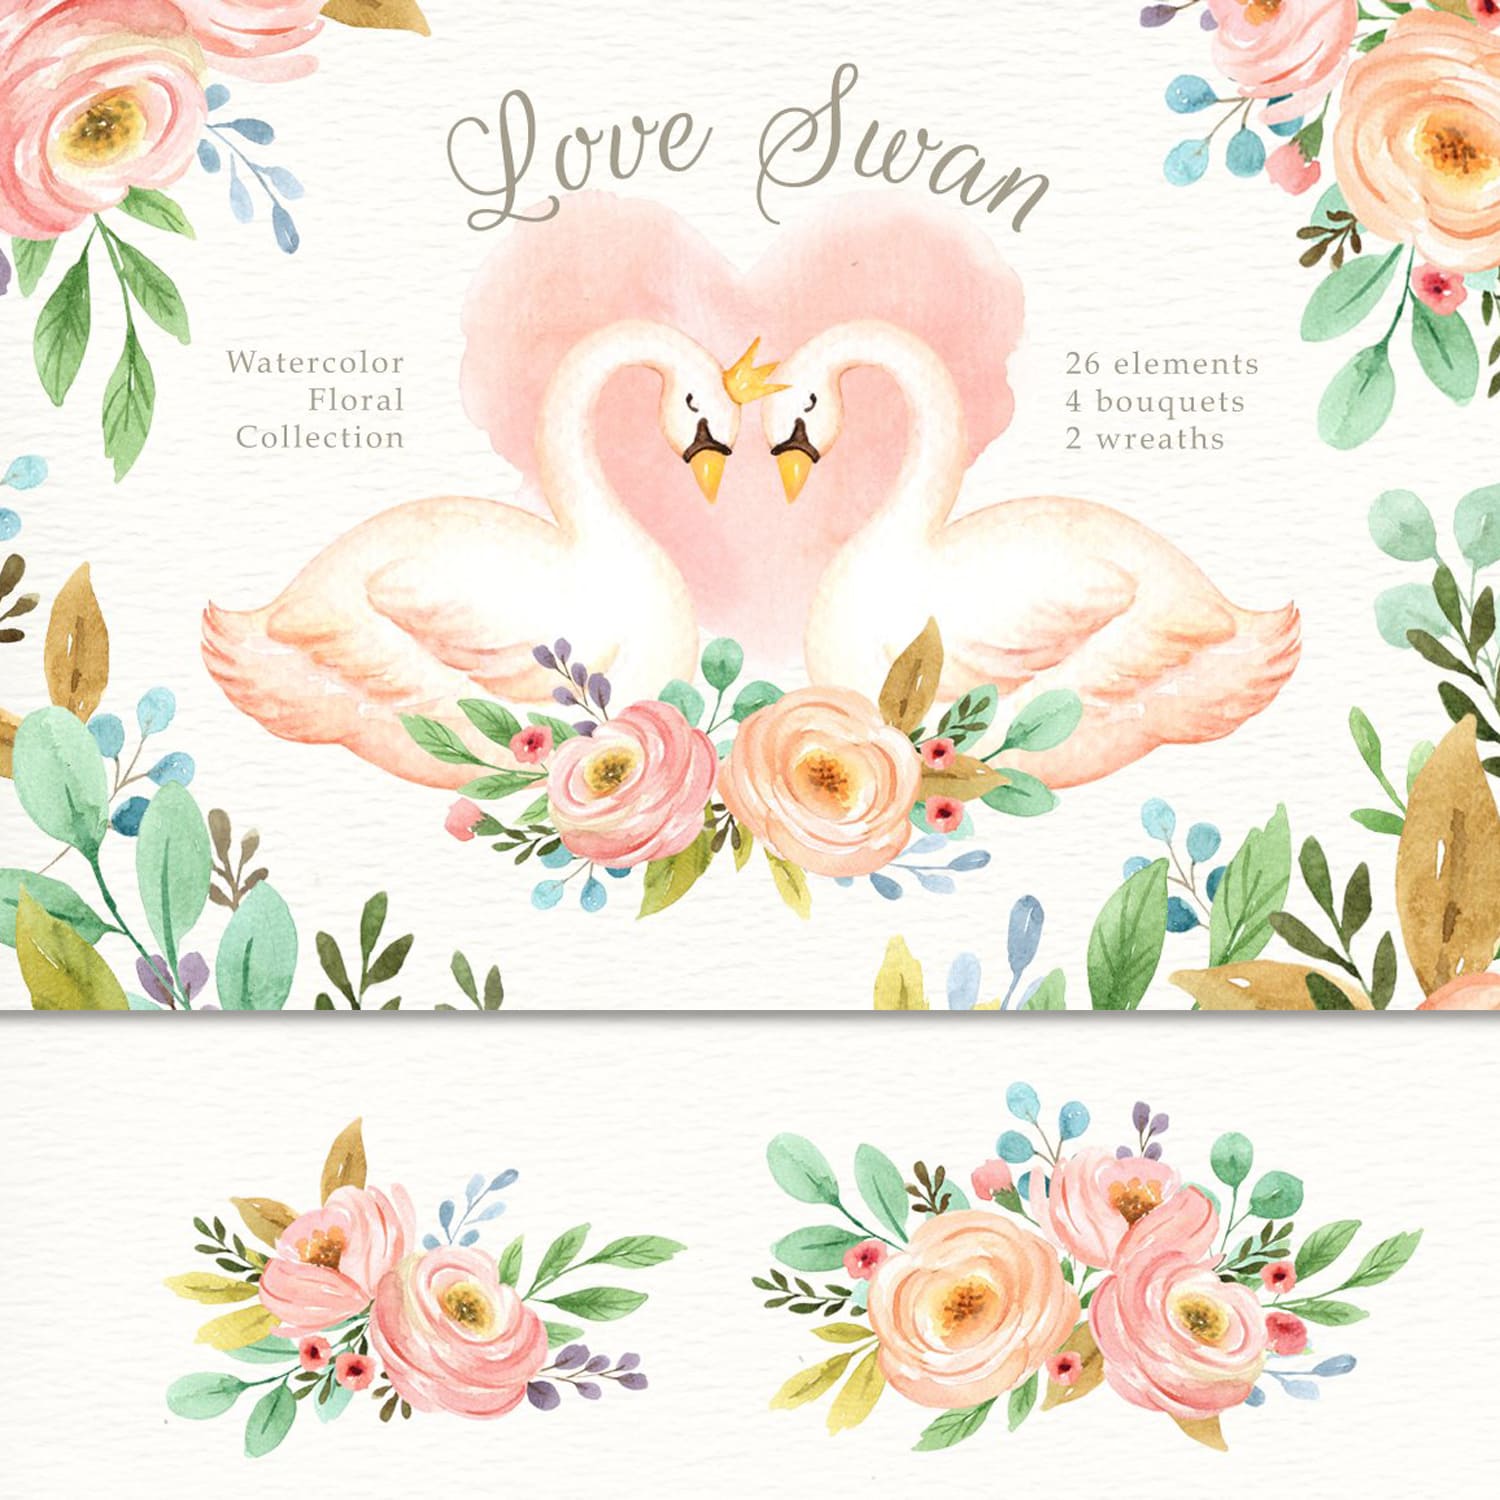 Love Swan Watercolor Clip Art.